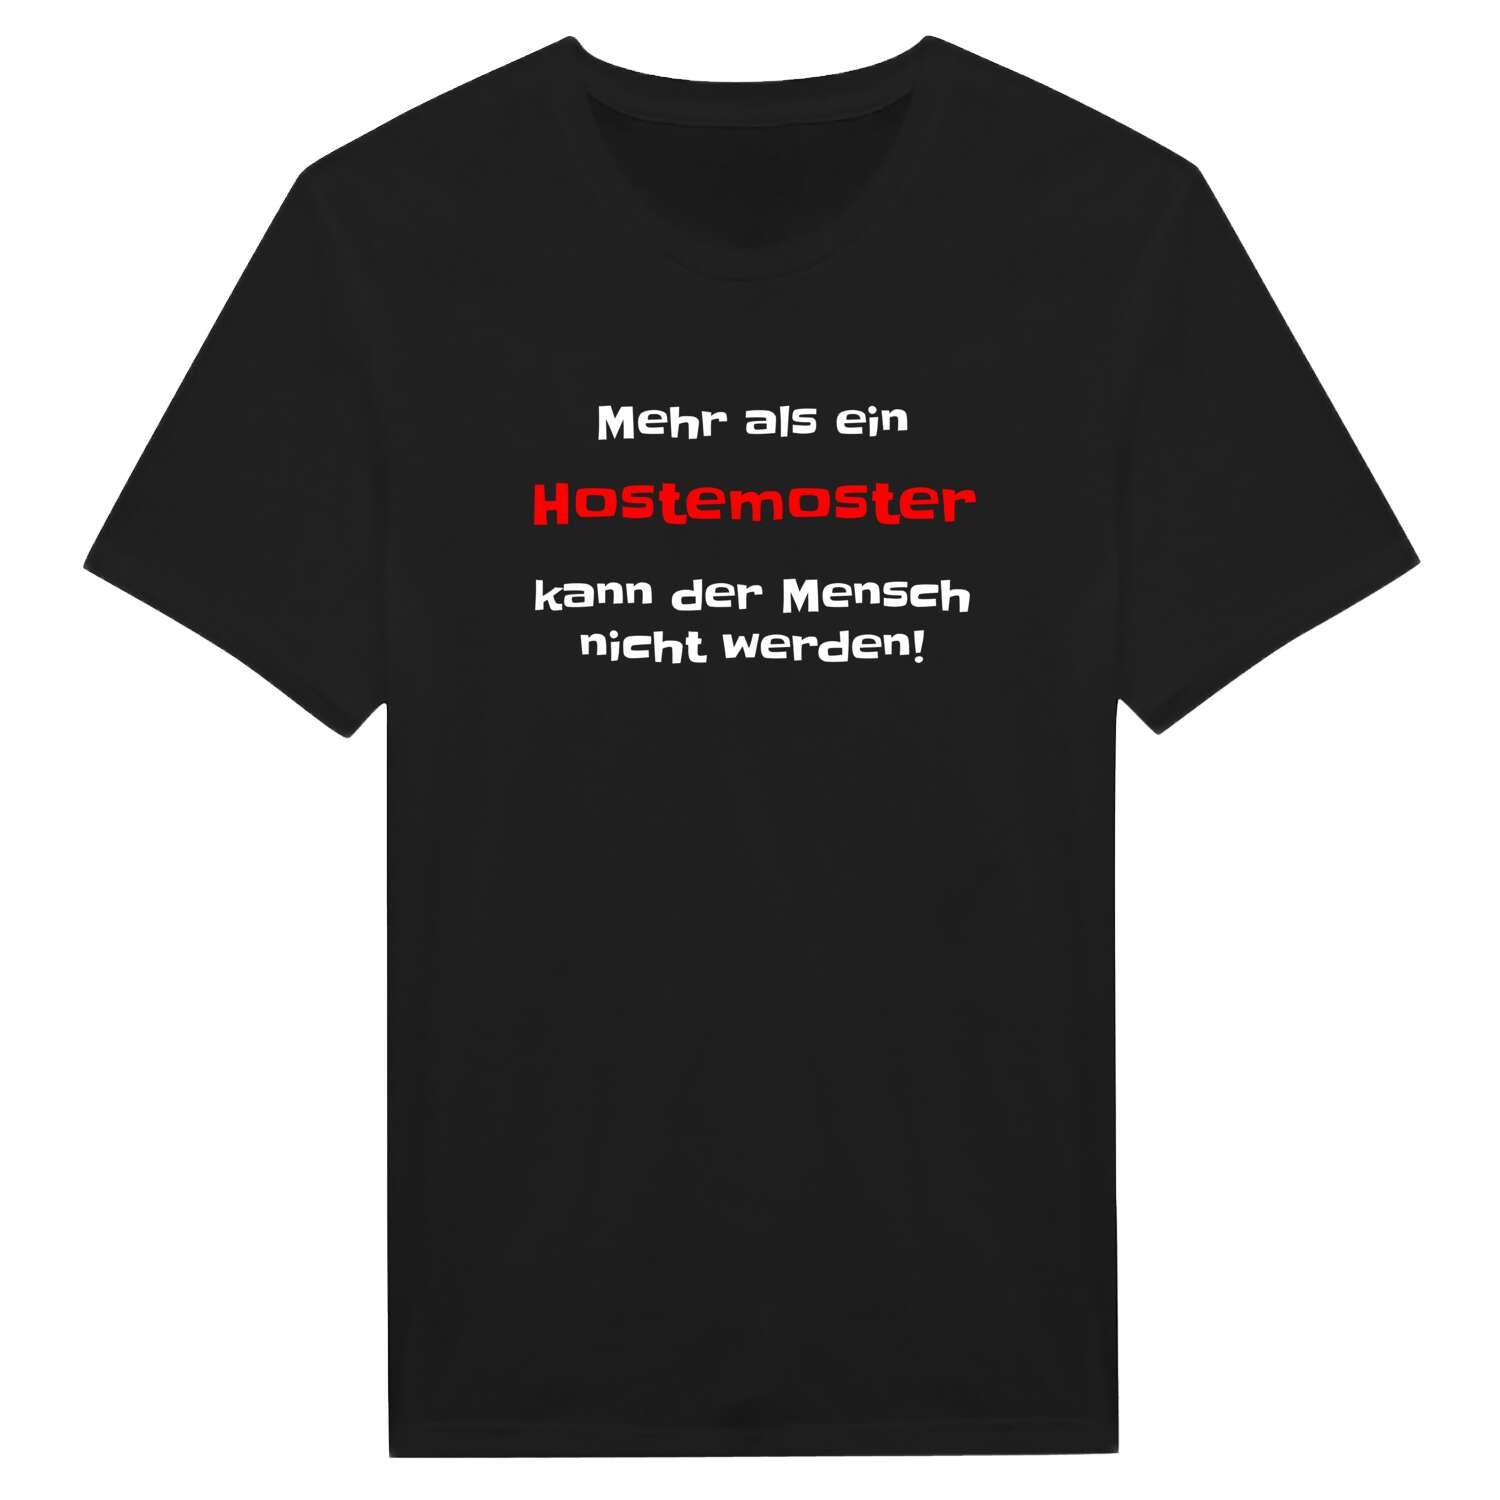 Hostemost T-Shirt »Mehr als ein«